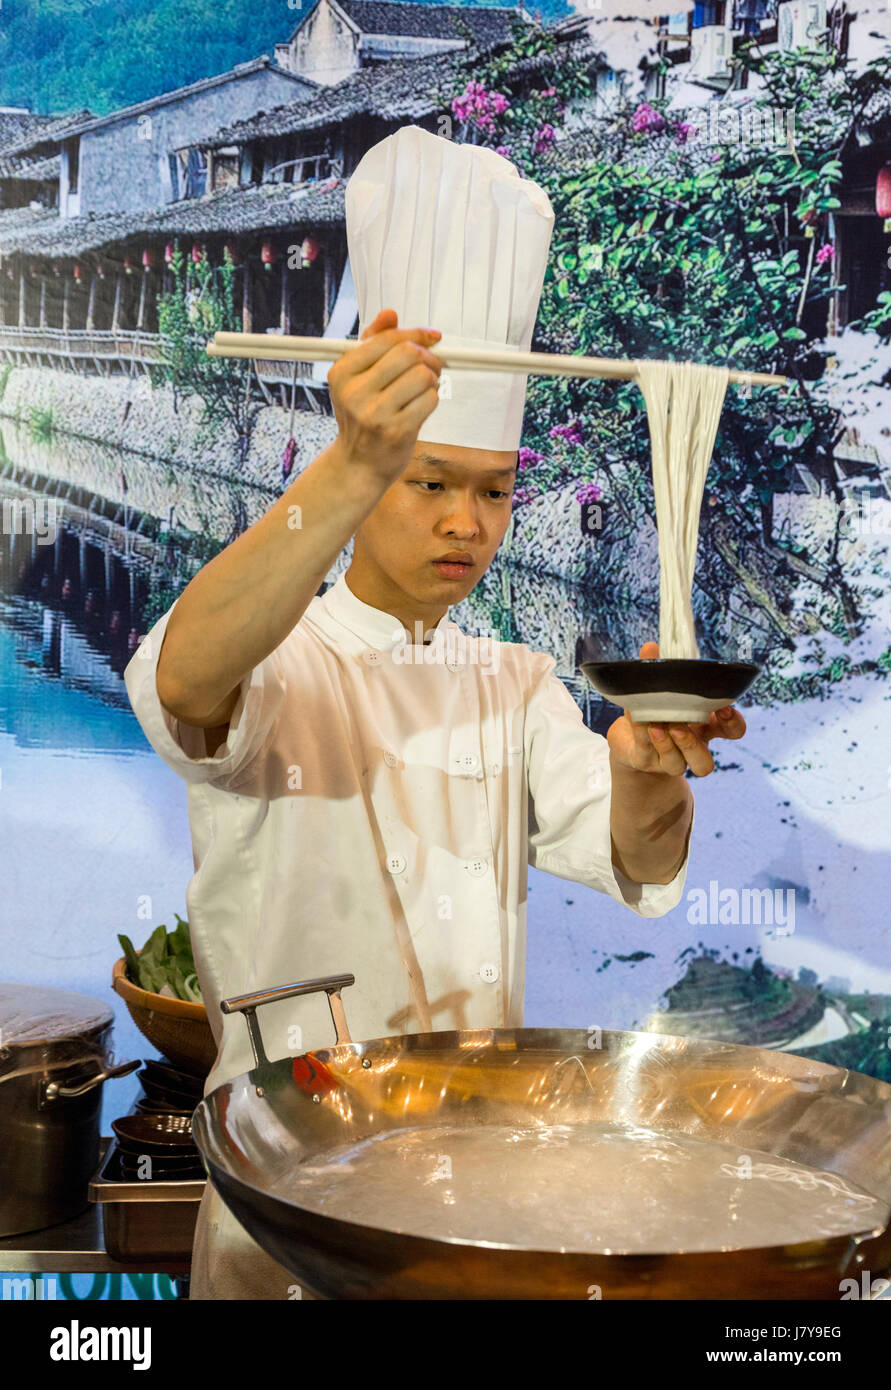 Wenzhou, Zhejiang, Chine. Le chef de l'hôtel démontrant la cuisiner et servir des nouilles. Banque D'Images